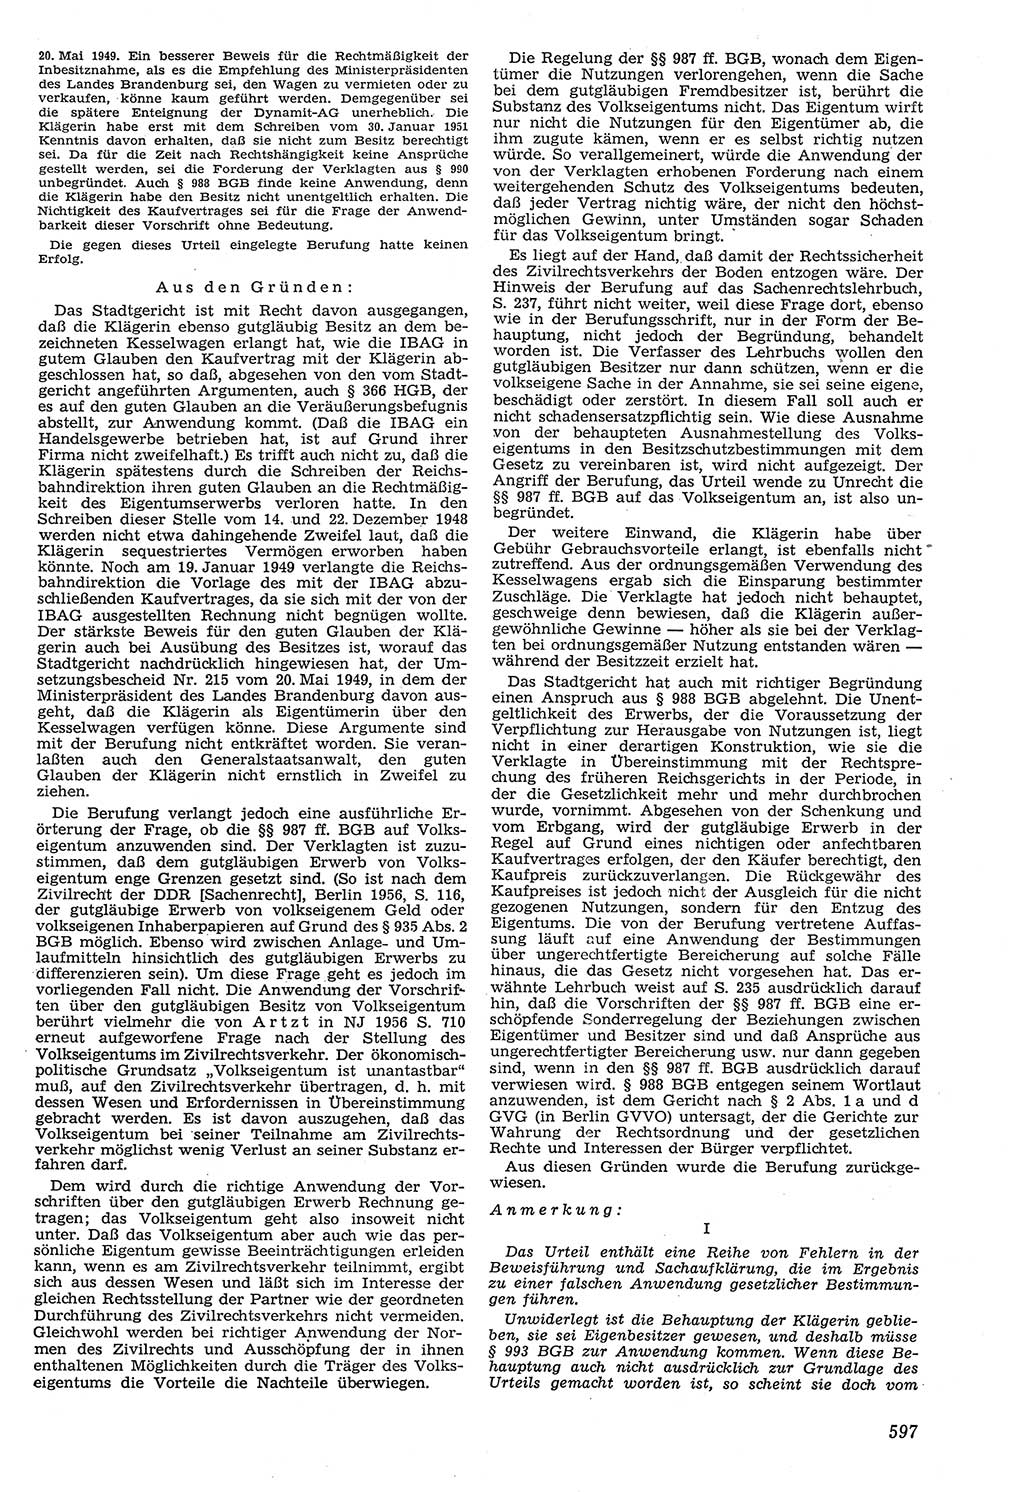 Neue Justiz (NJ), Zeitschrift für Recht und Rechtswissenschaft [Deutsche Demokratische Republik (DDR)], 11. Jahrgang 1957, Seite 597 (NJ DDR 1957, S. 597)